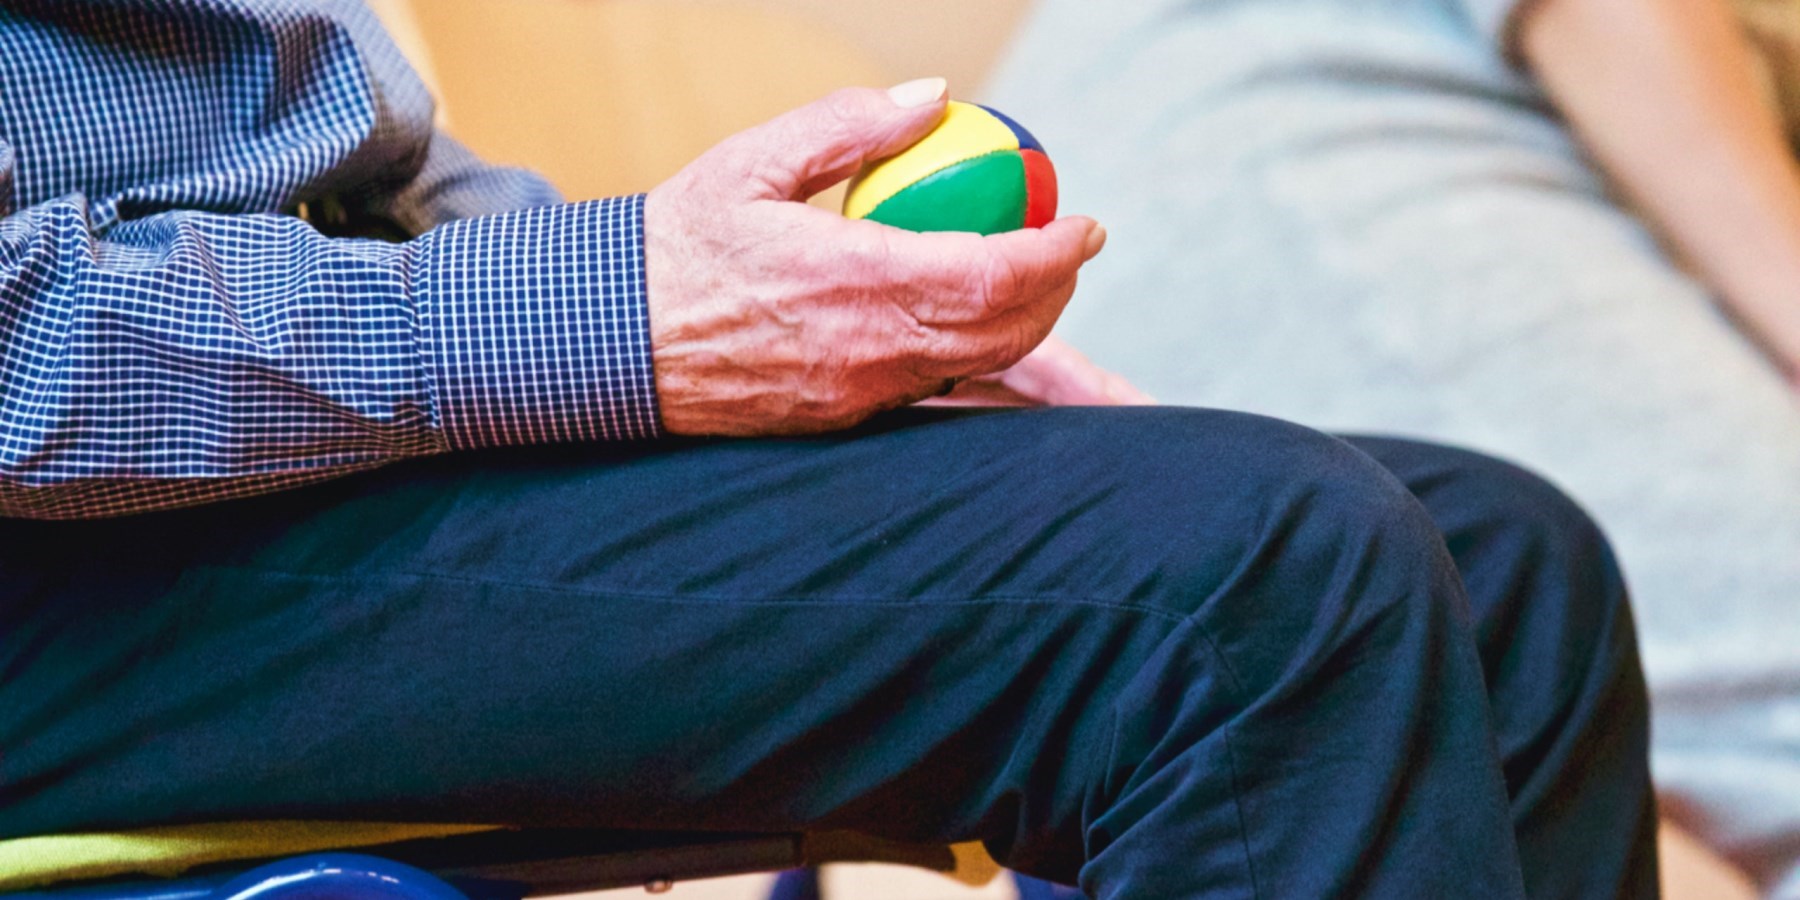 Senior man holding exercise ball